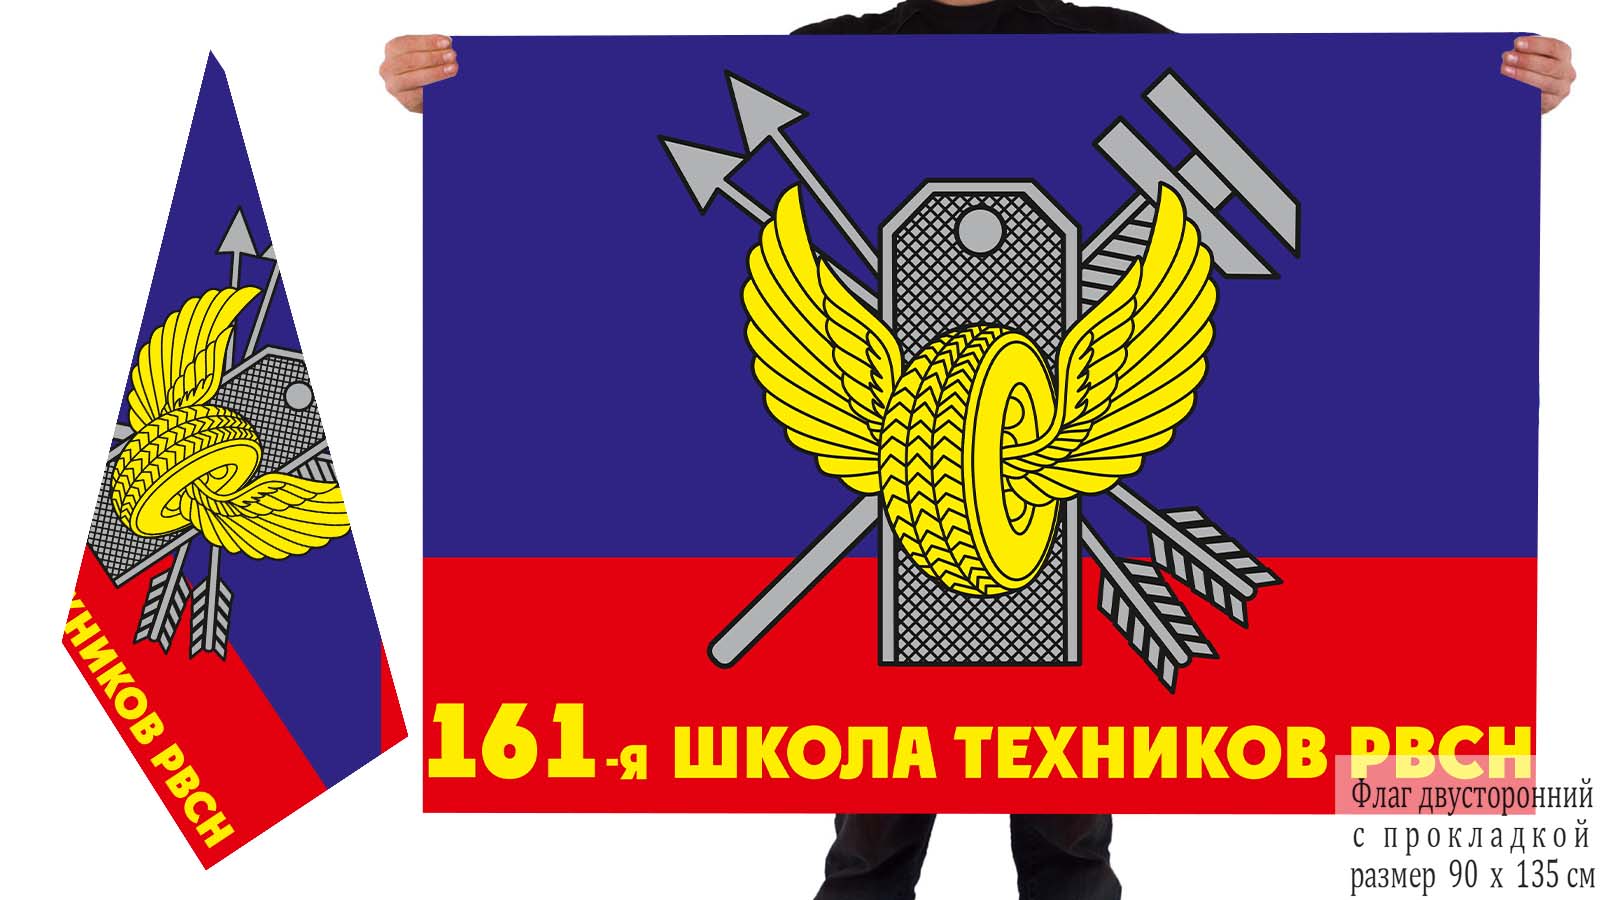 Двустронний флаг 161-ой школы техников РВСН